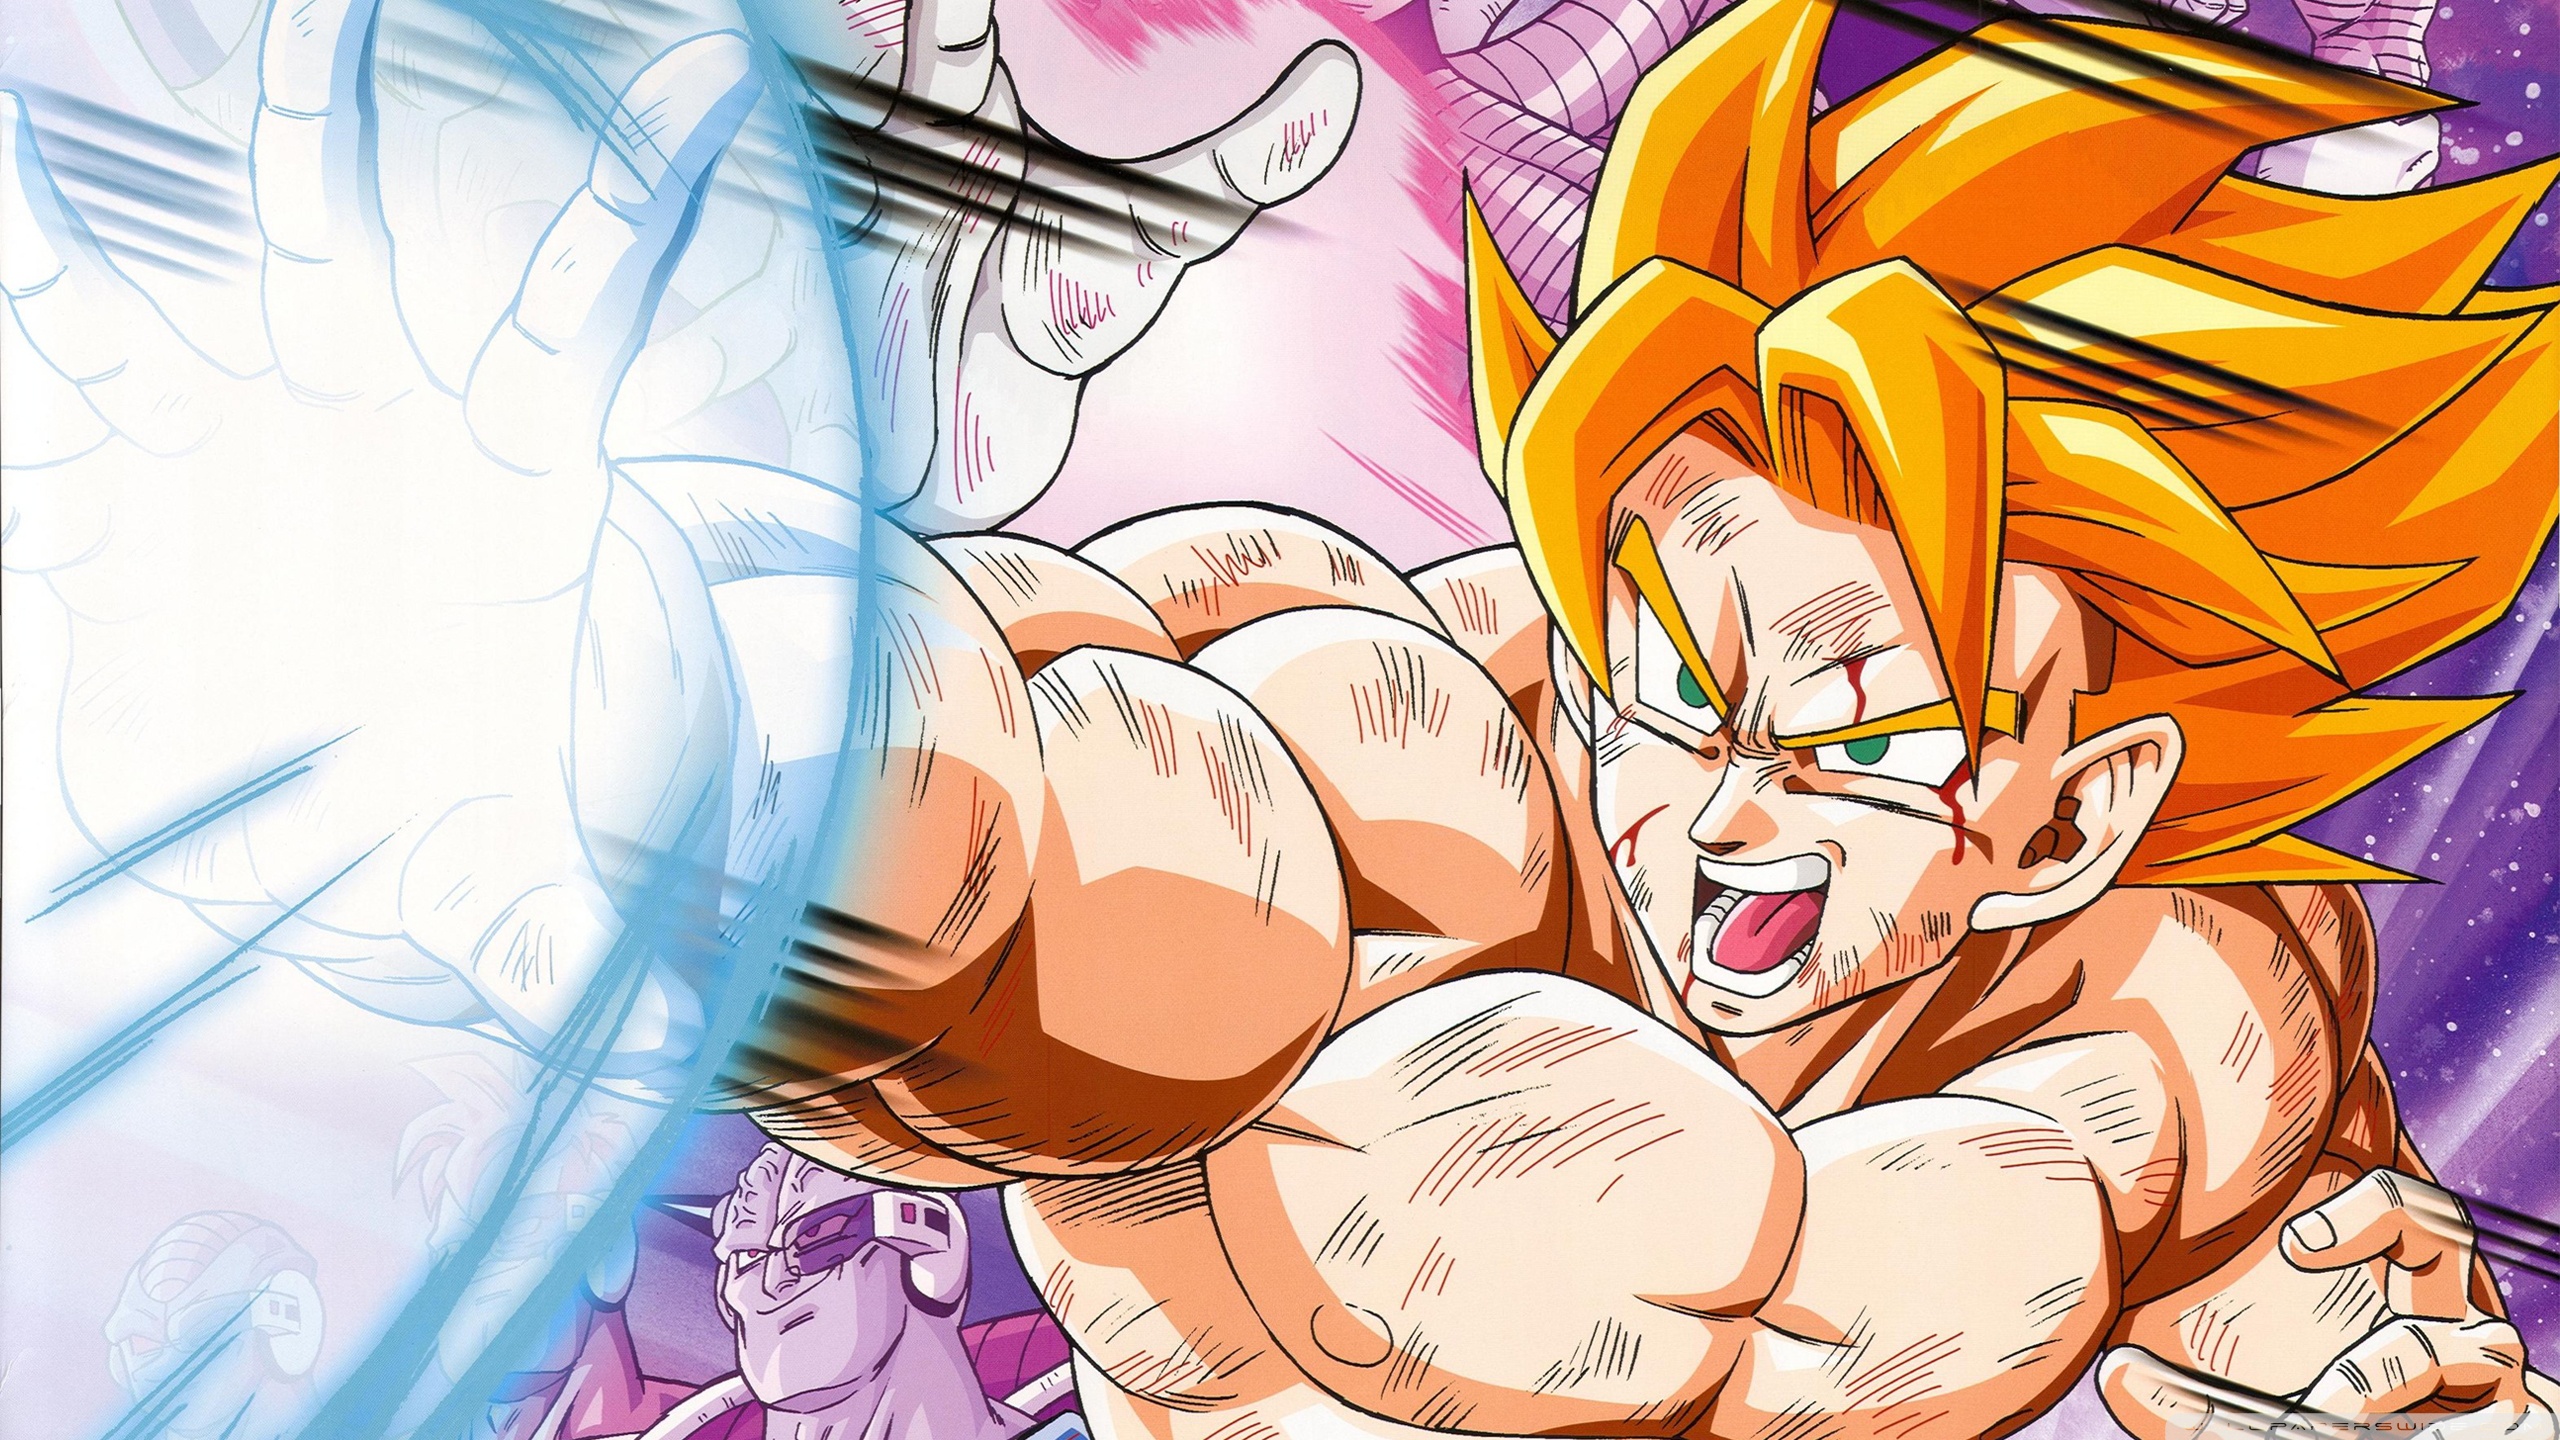 Dragon Ball Z - một trong những bộ Anime được yêu thích nhất mọi thời đại, với những trận chiến gay cấn với các nhân vật siêu năng lực. Hãy xem những hình ảnh đặc sắc về Dragon Ball Z để tận hưởng cảm giác hồi hộp và phấn khích.